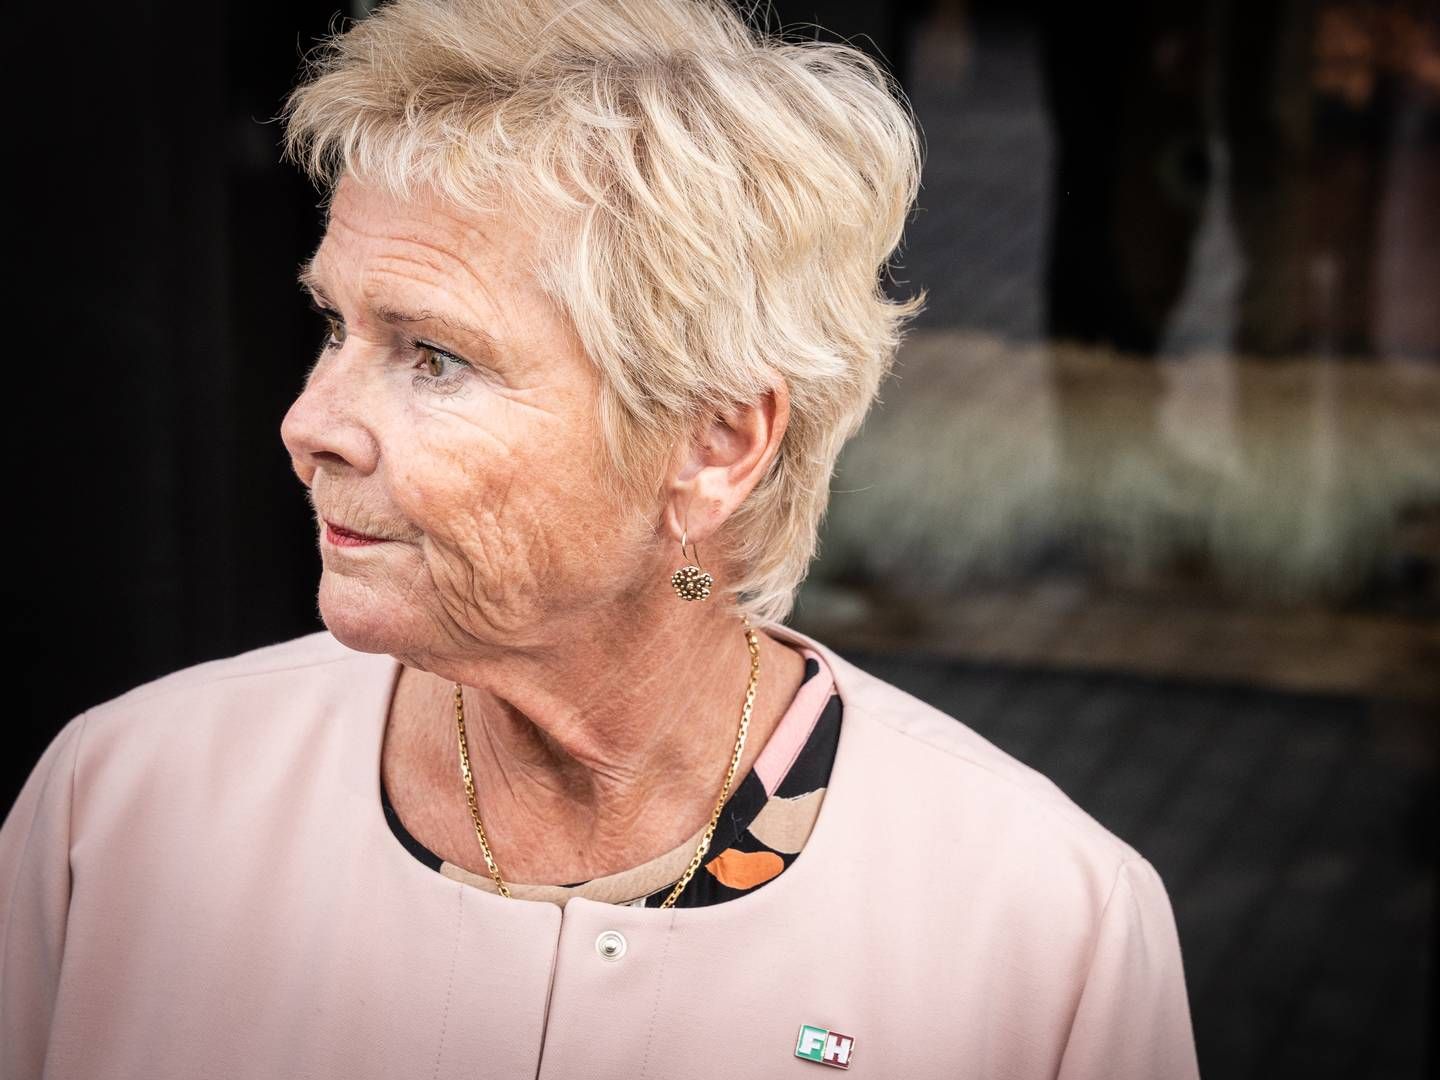 Lizette Risgaard har under stor bevågenhed trukket sig som formand for Fagbevægelsens Hovedorganisation (FH) efter anklager om upassende adfærd. | Foto: Emil Nicolai Helms/Ritzau Scanpix